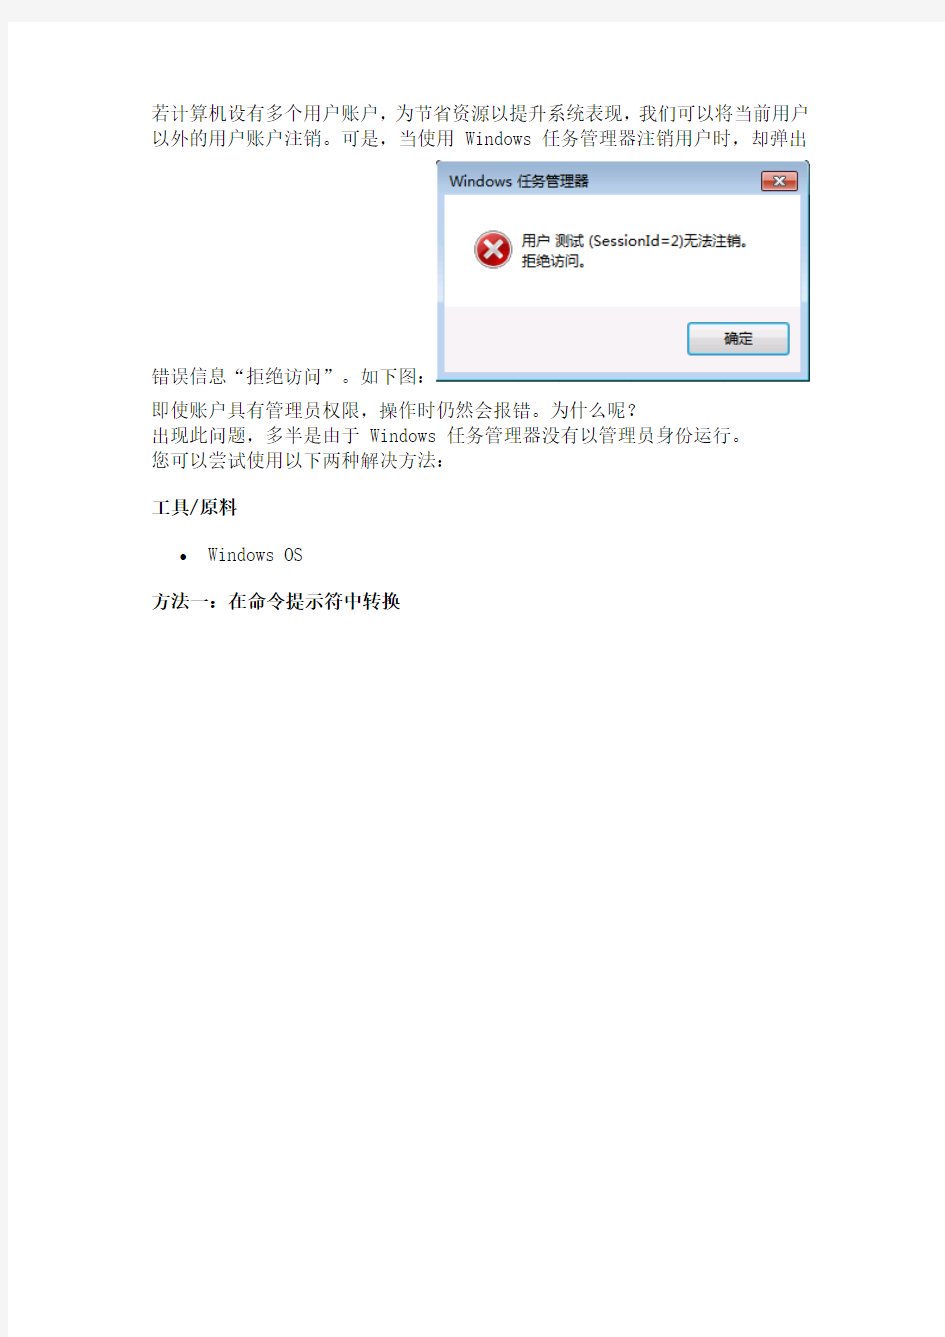 在Windows任务管理器中注销帐户会“拒绝访问”